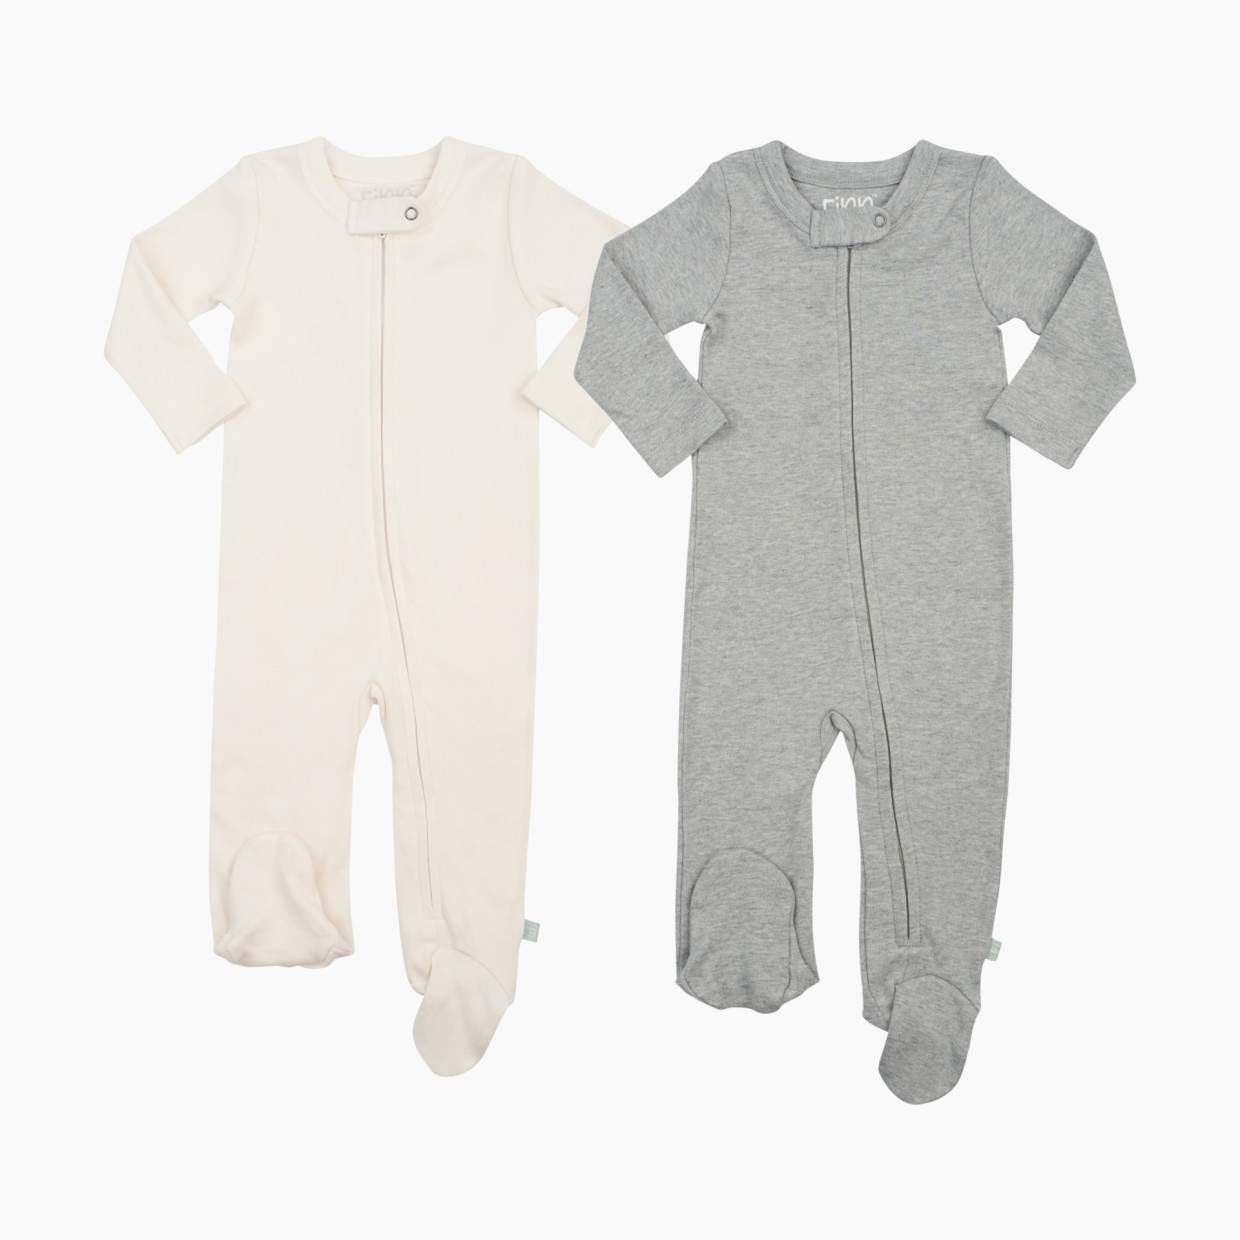 Finn + Emma Organic Cotton Basics Zipper Footie (2 Pack) - Grey/Off White, 0-3 Months.